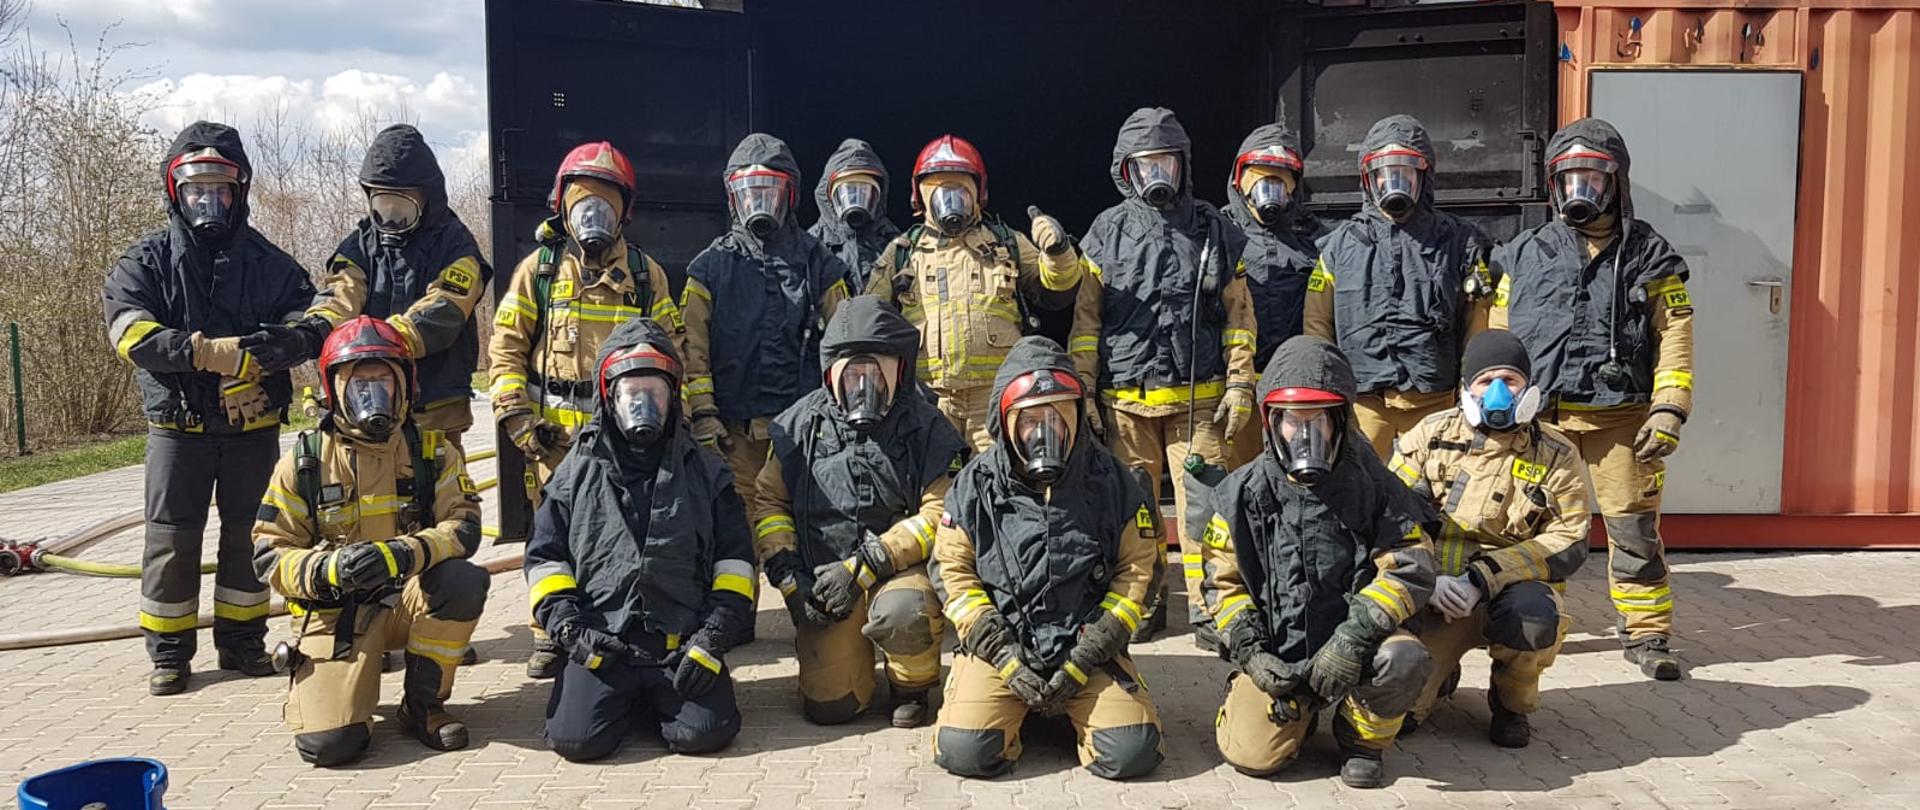 W szkoleniu zorganizowanym przez Ośrodek Szkolenia KW PSP w Opolu wzięli udział strażacy PSP z terenu województwa opolskiego w tym 3 strażaków z KP PSP w Brzegu.